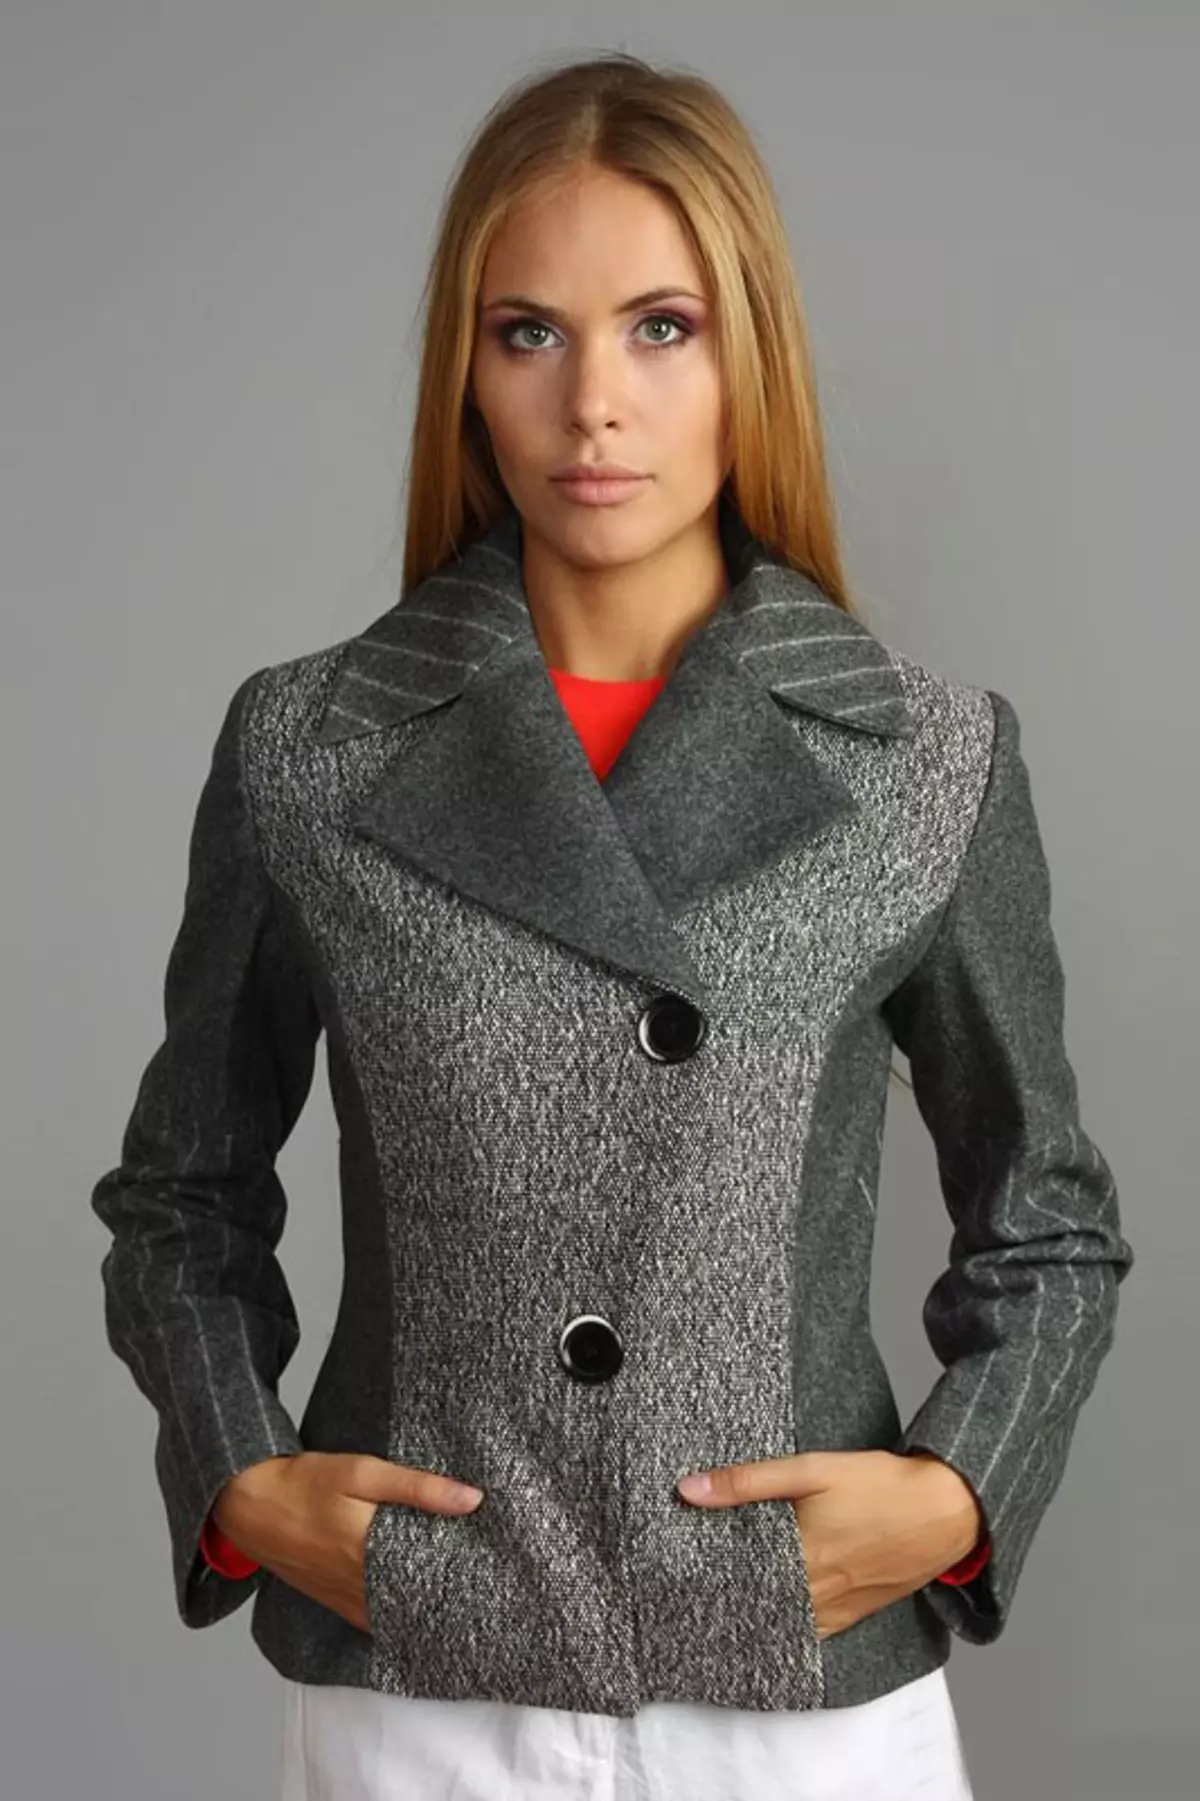 Coat-Jacket (36 wêne): Modelên Valya yên Fashionable yên demsala biharê 2021, kincê jinan di forma qîzikê de 478_8